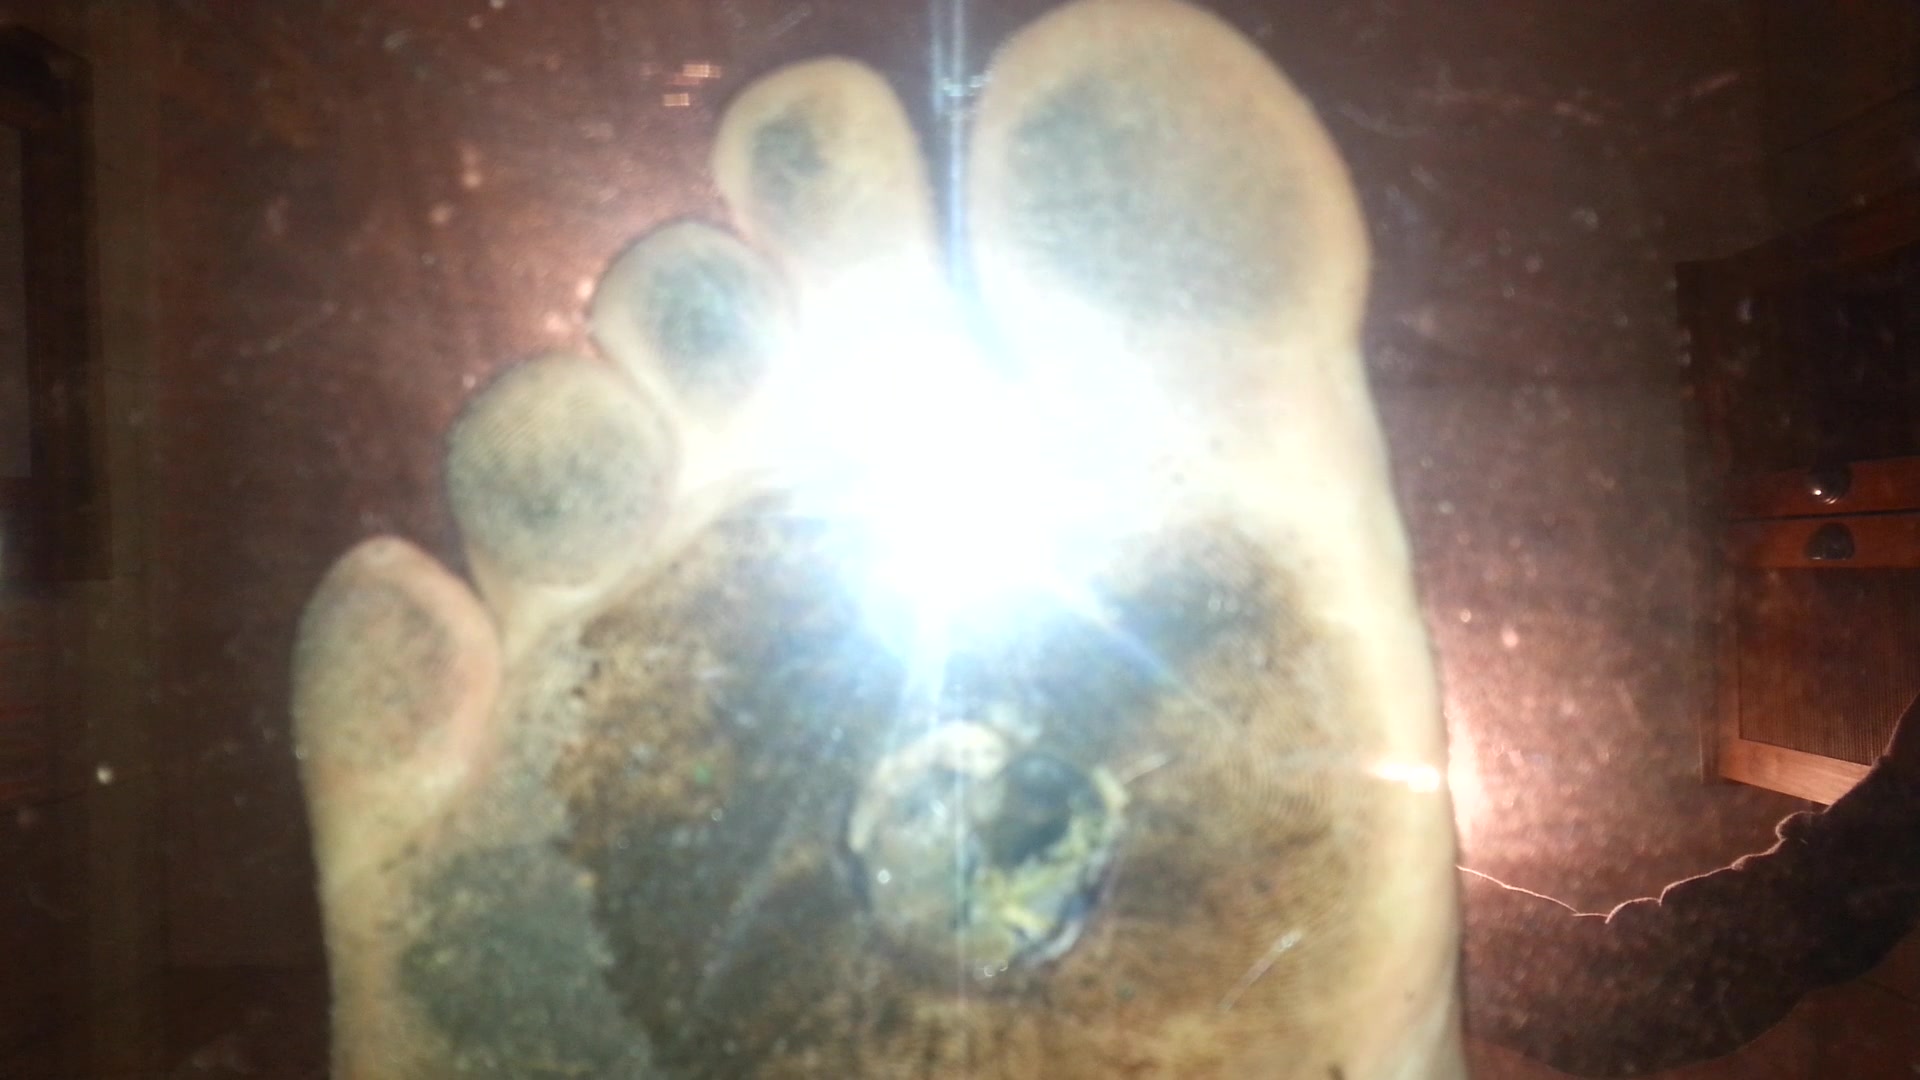 Underglass Dirty Feet Snail Crush